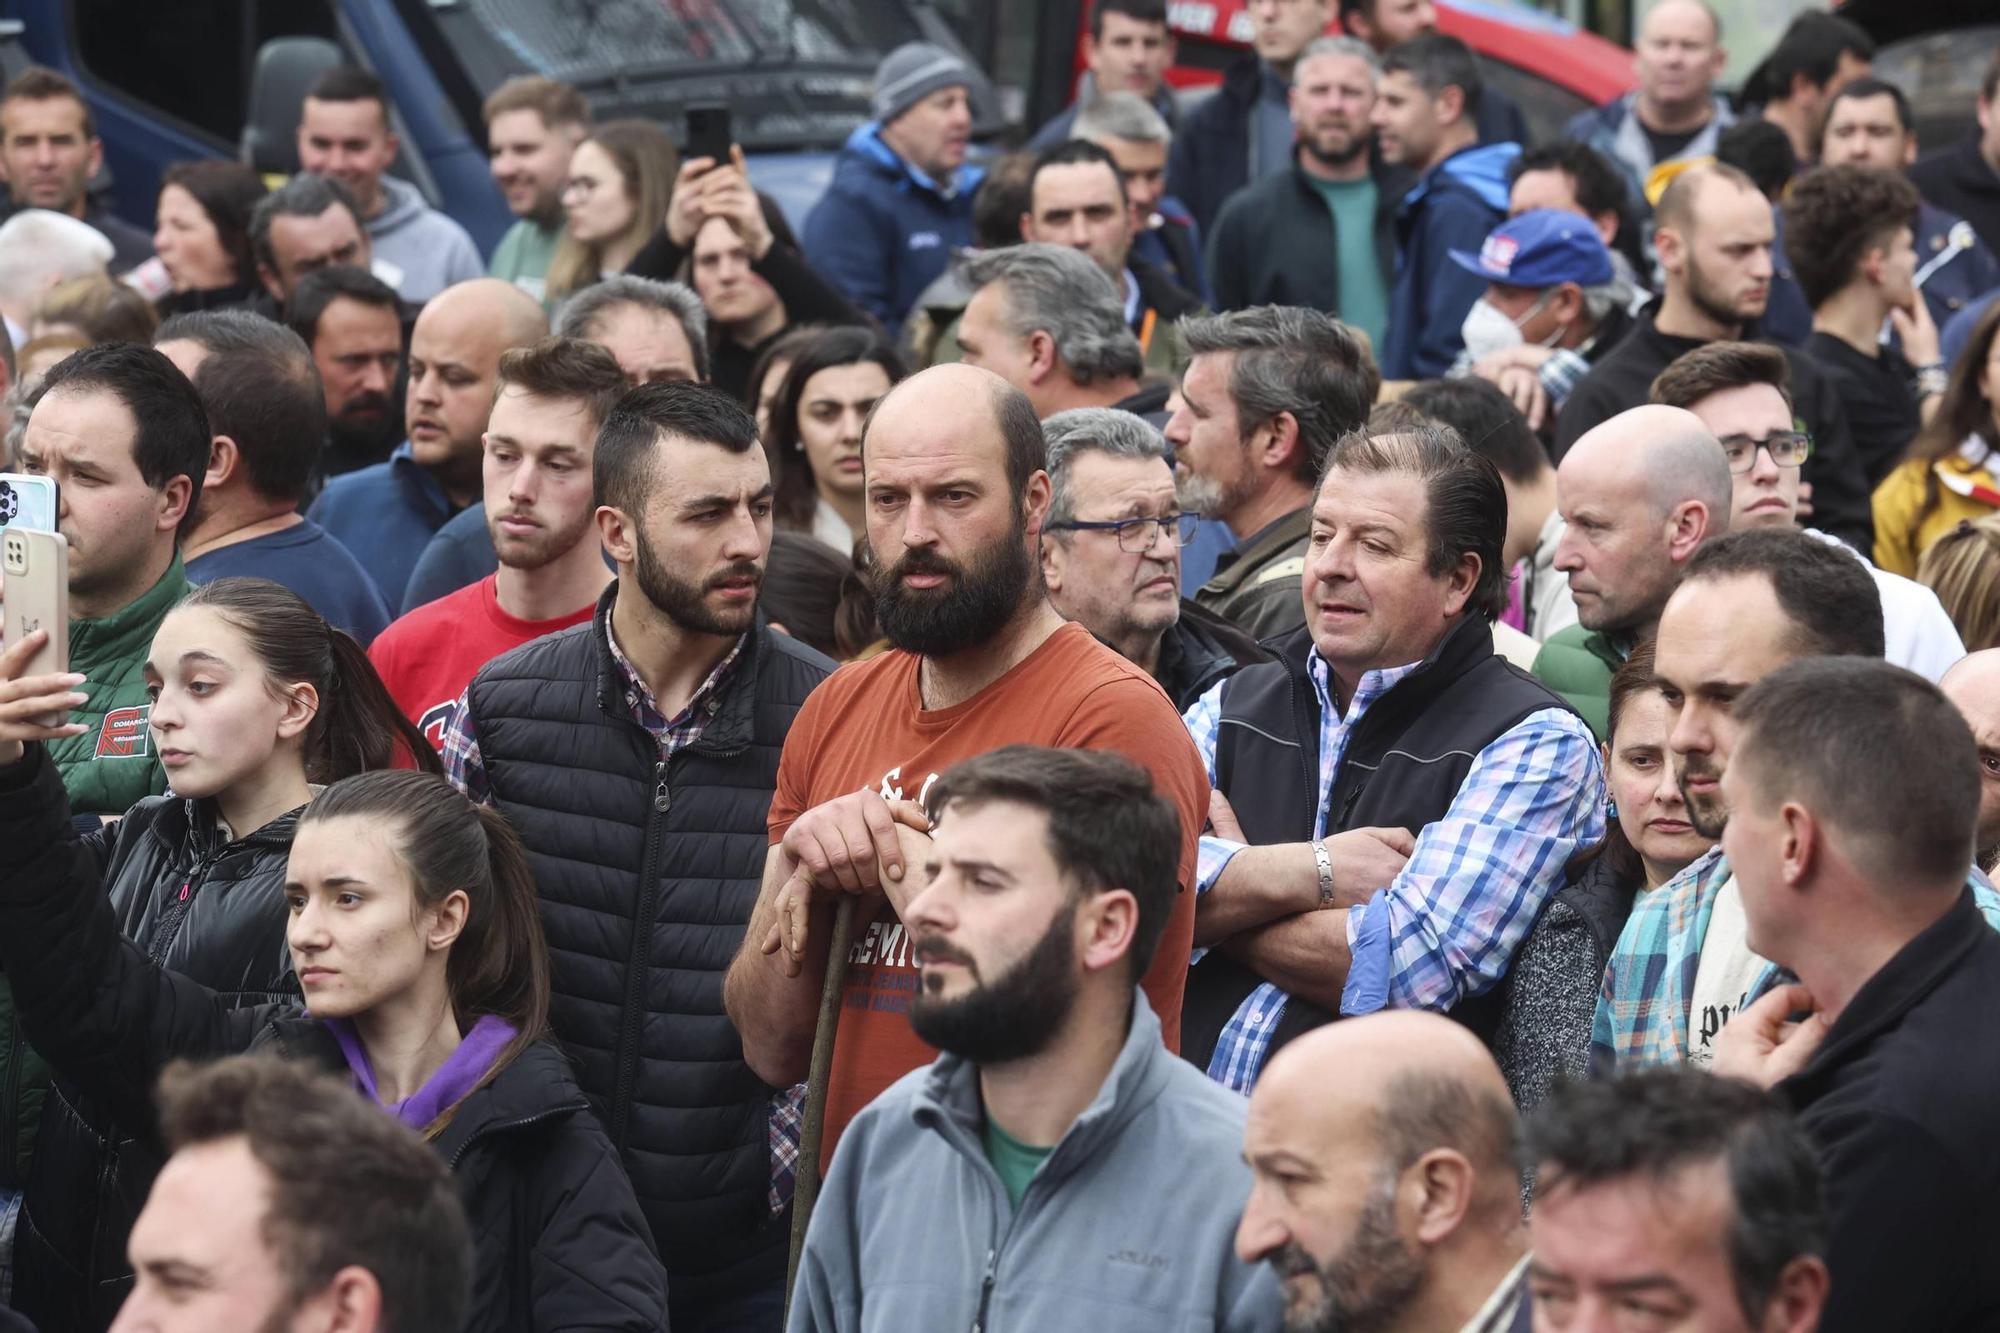 Así fue la protesta agrícola y ganadera convocada en Oviedo